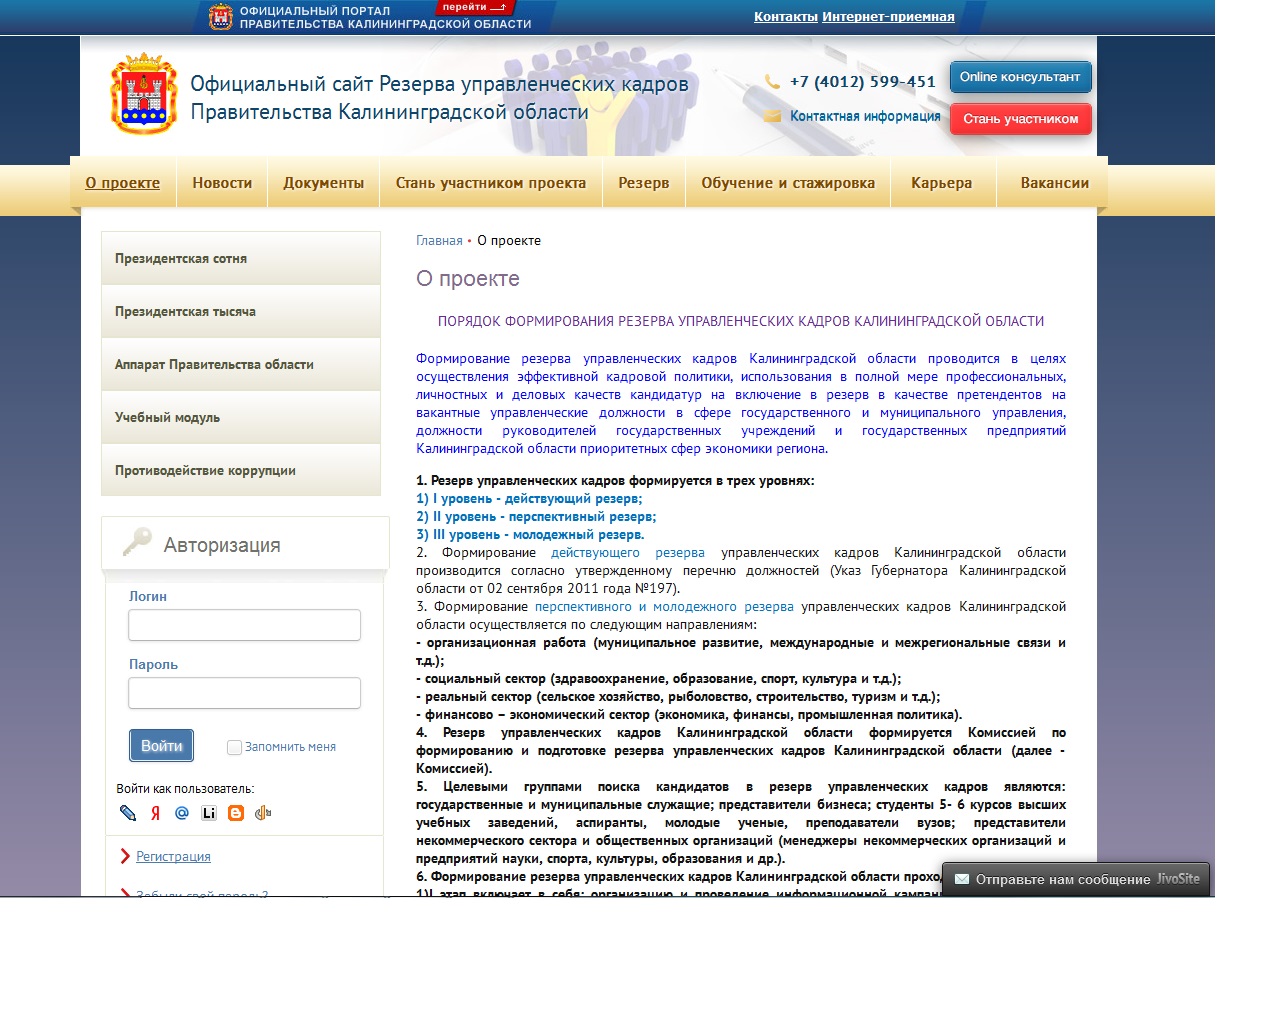 создание официального сайта резерва управленческих кадров калининградской области